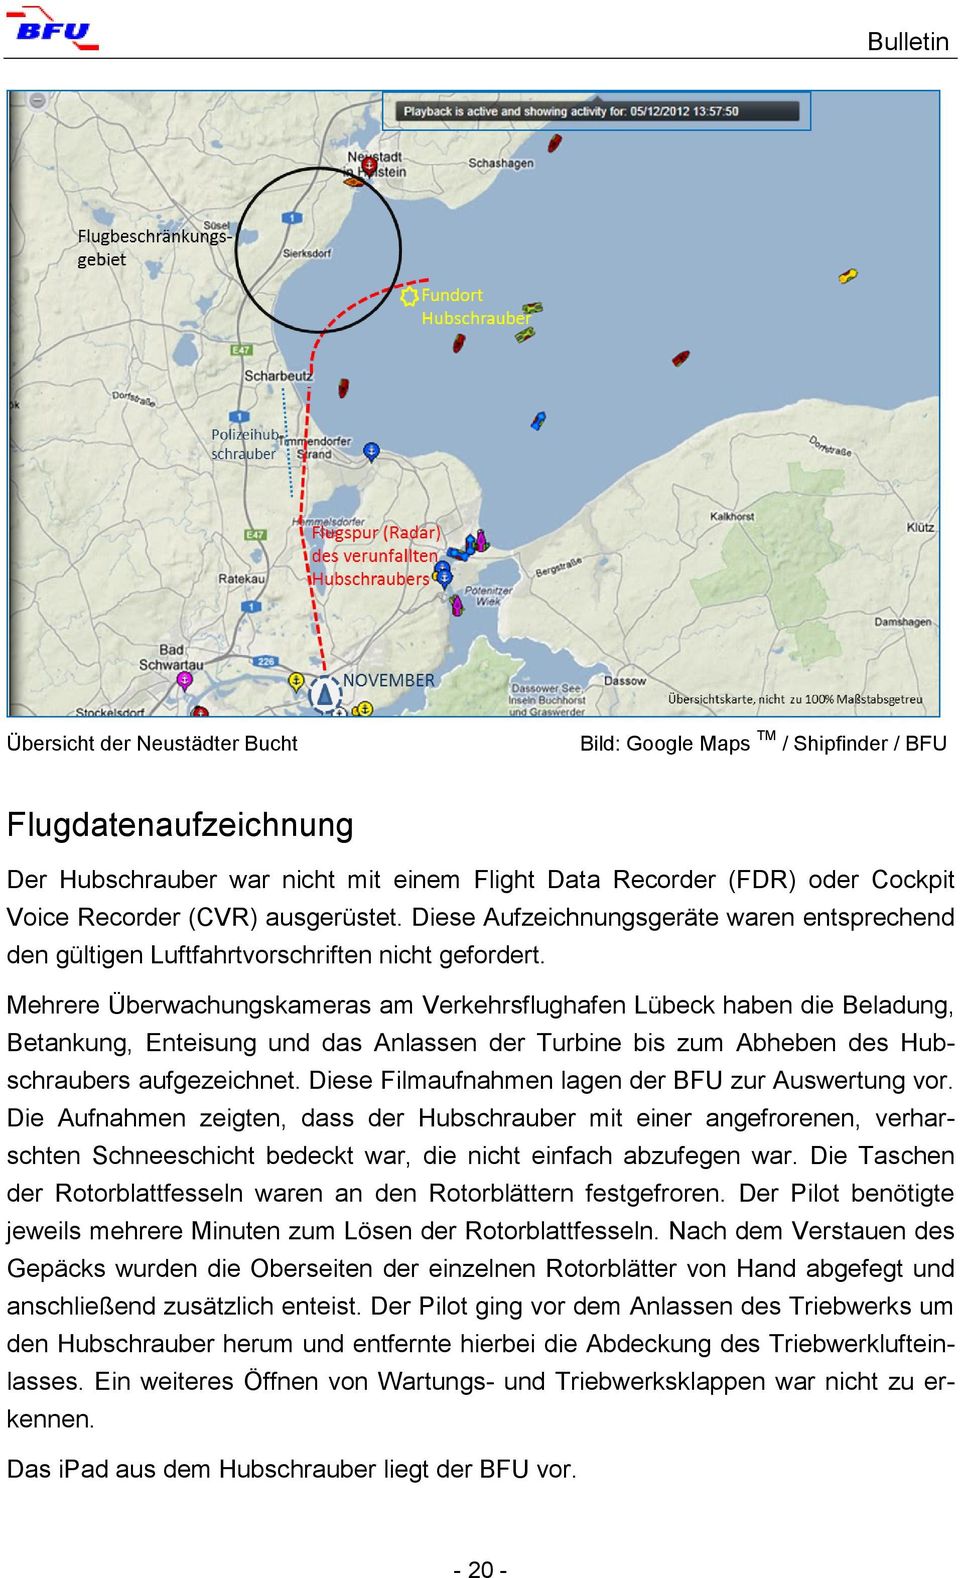 Mehrere Überwachungskameras am Verkehrsflughafen Lübeck haben die Beladung, Betankung, Enteisung und das Anlassen der Turbine bis zum Abheben des Hubschraubers aufgezeichnet.